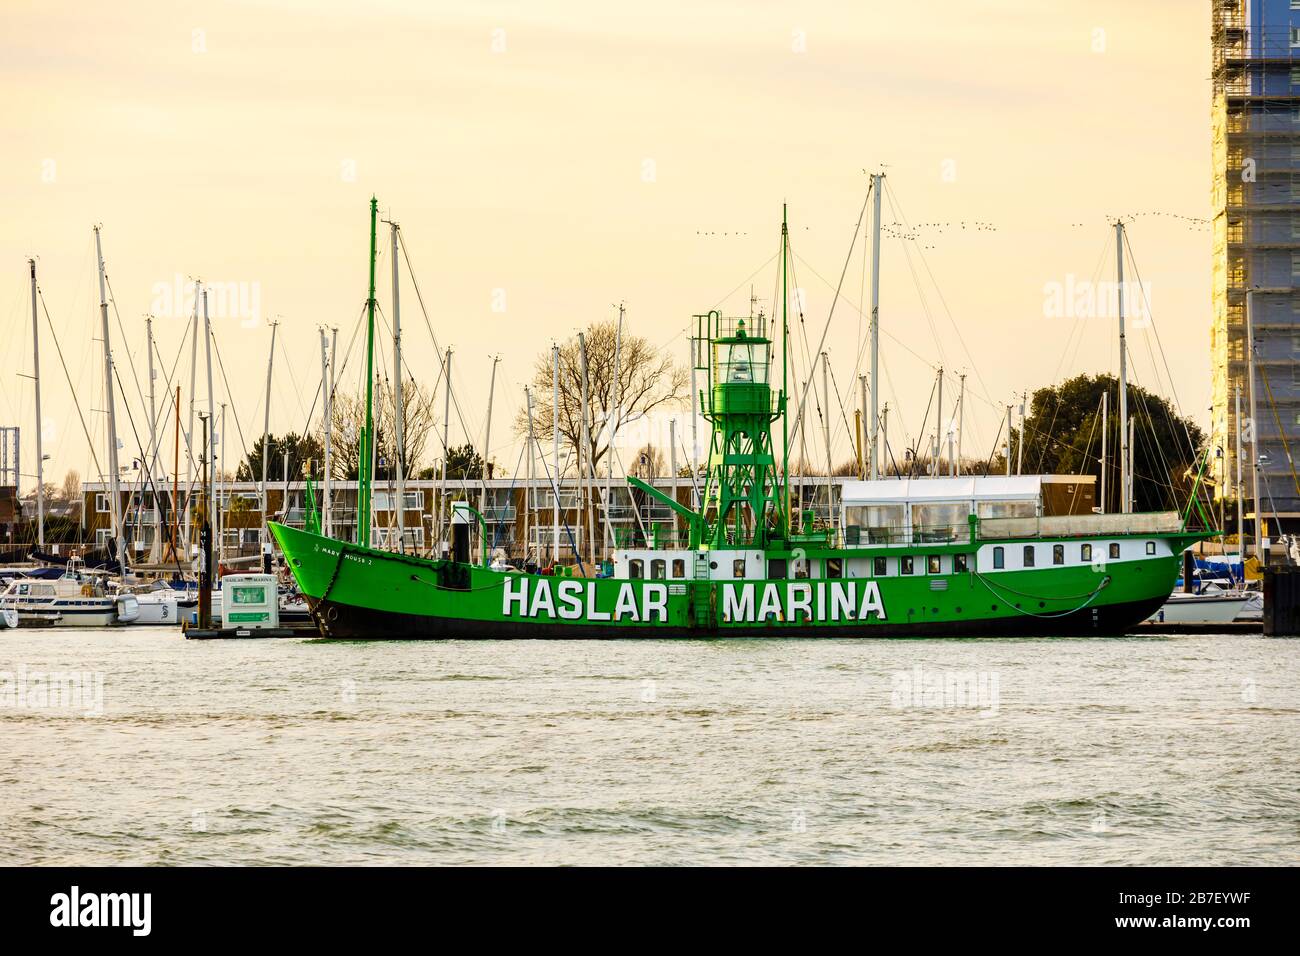 Grünes Feuerschiff Mary Mouse 2, das an der Einfahrt zur Haslar Marina im Hafen von Portsmouth aus gesehen wurde, von Old Portsmouth, Hampshire, Südküste Englands Stockfoto